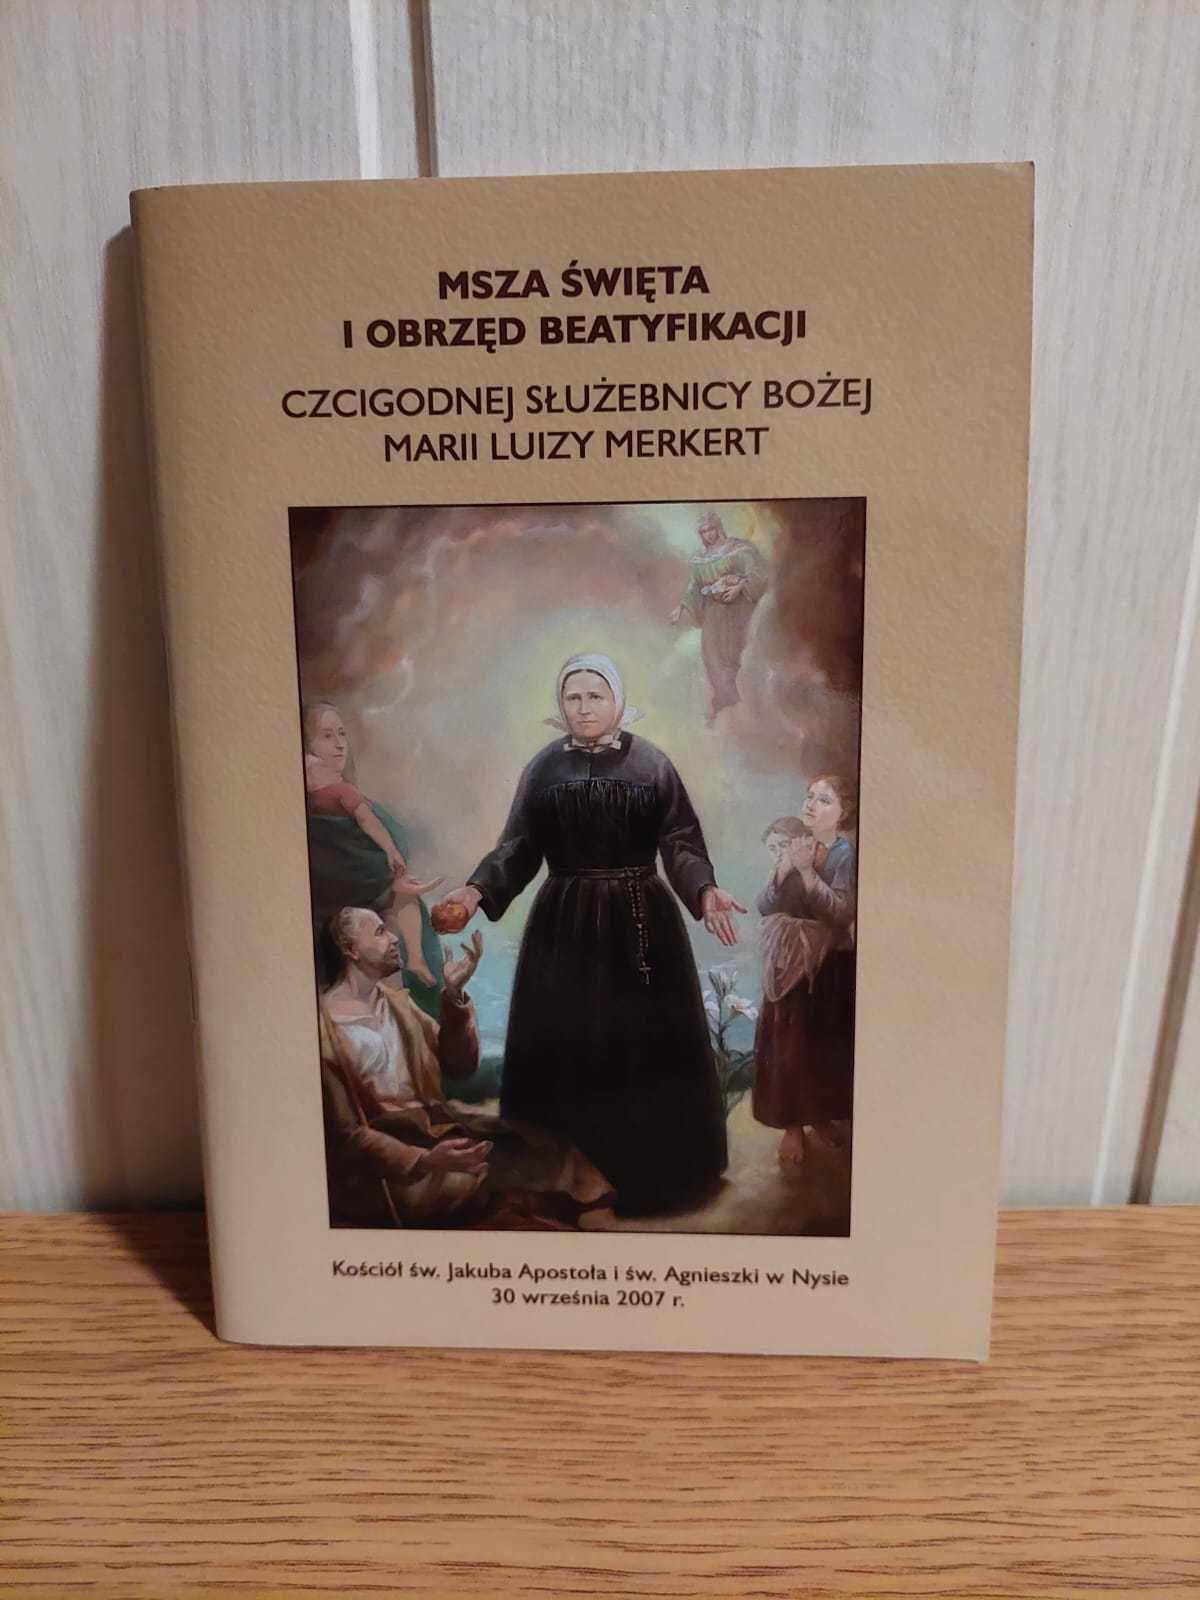 Książeczka - Obrzęd Beatyfikiacji Marii Luizy Merkert.